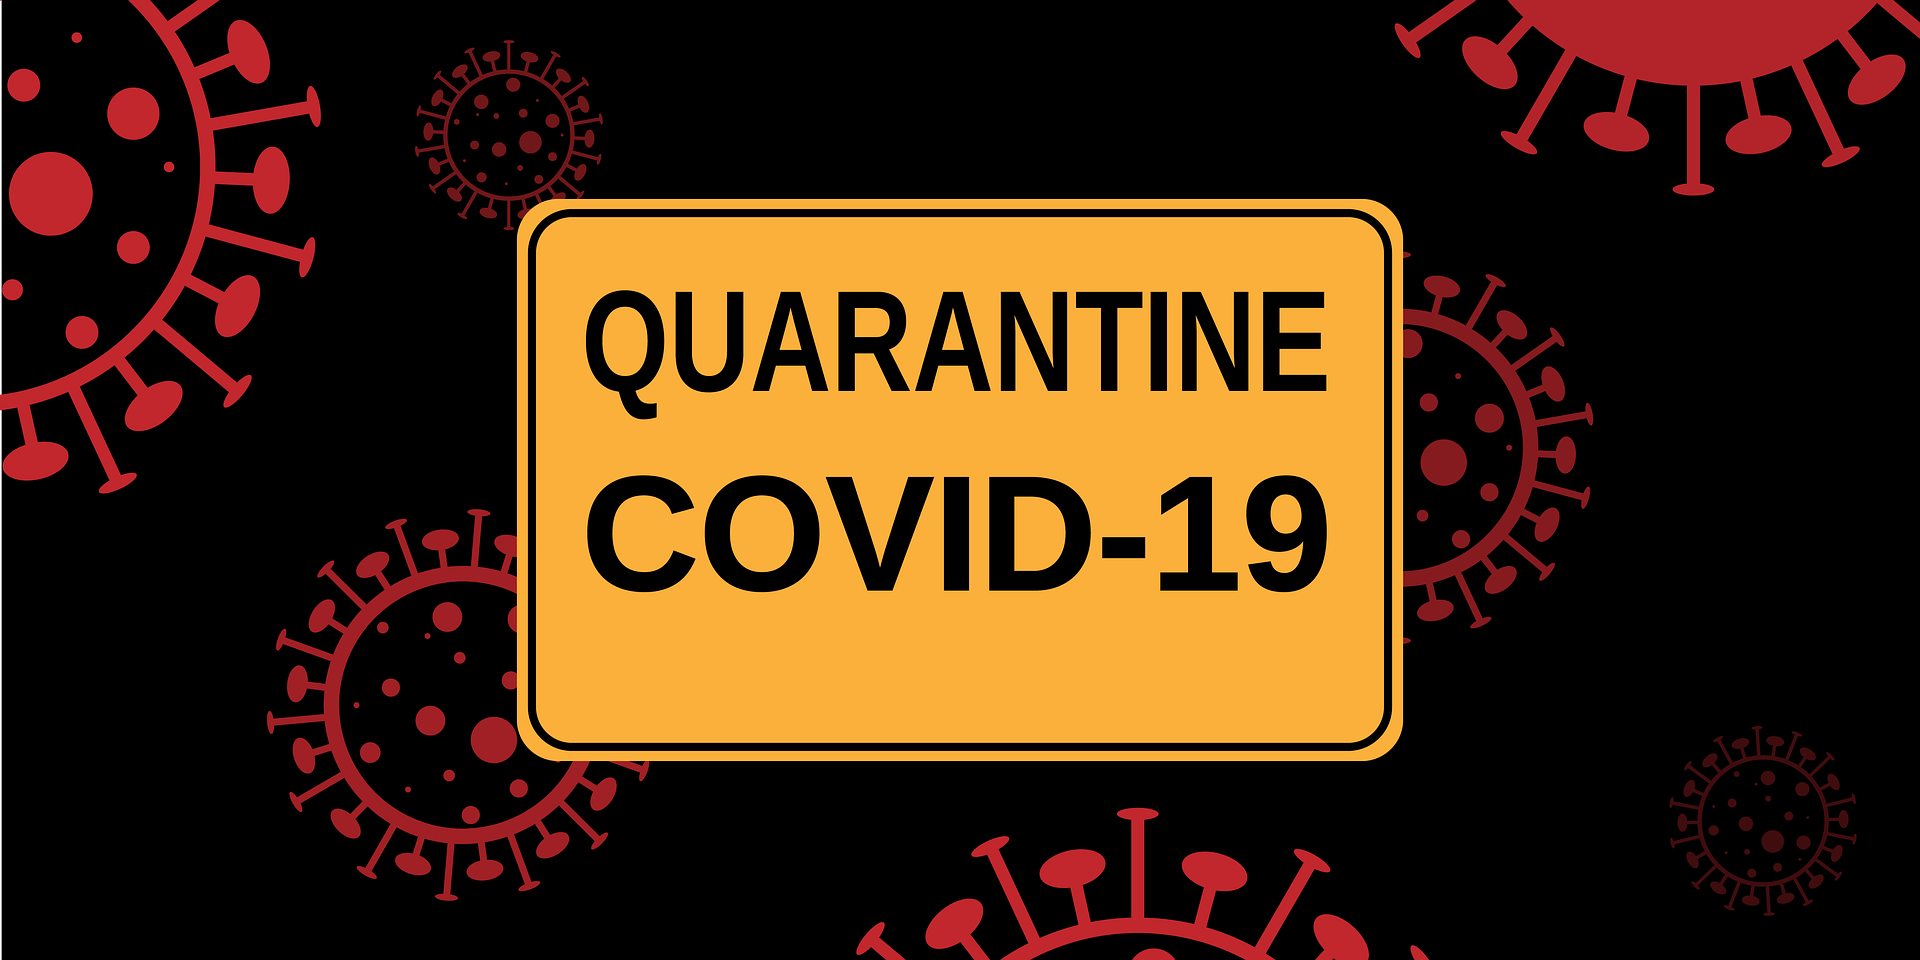 Prophet Muhammad’s Guidance for the Prevention of Coronavirus